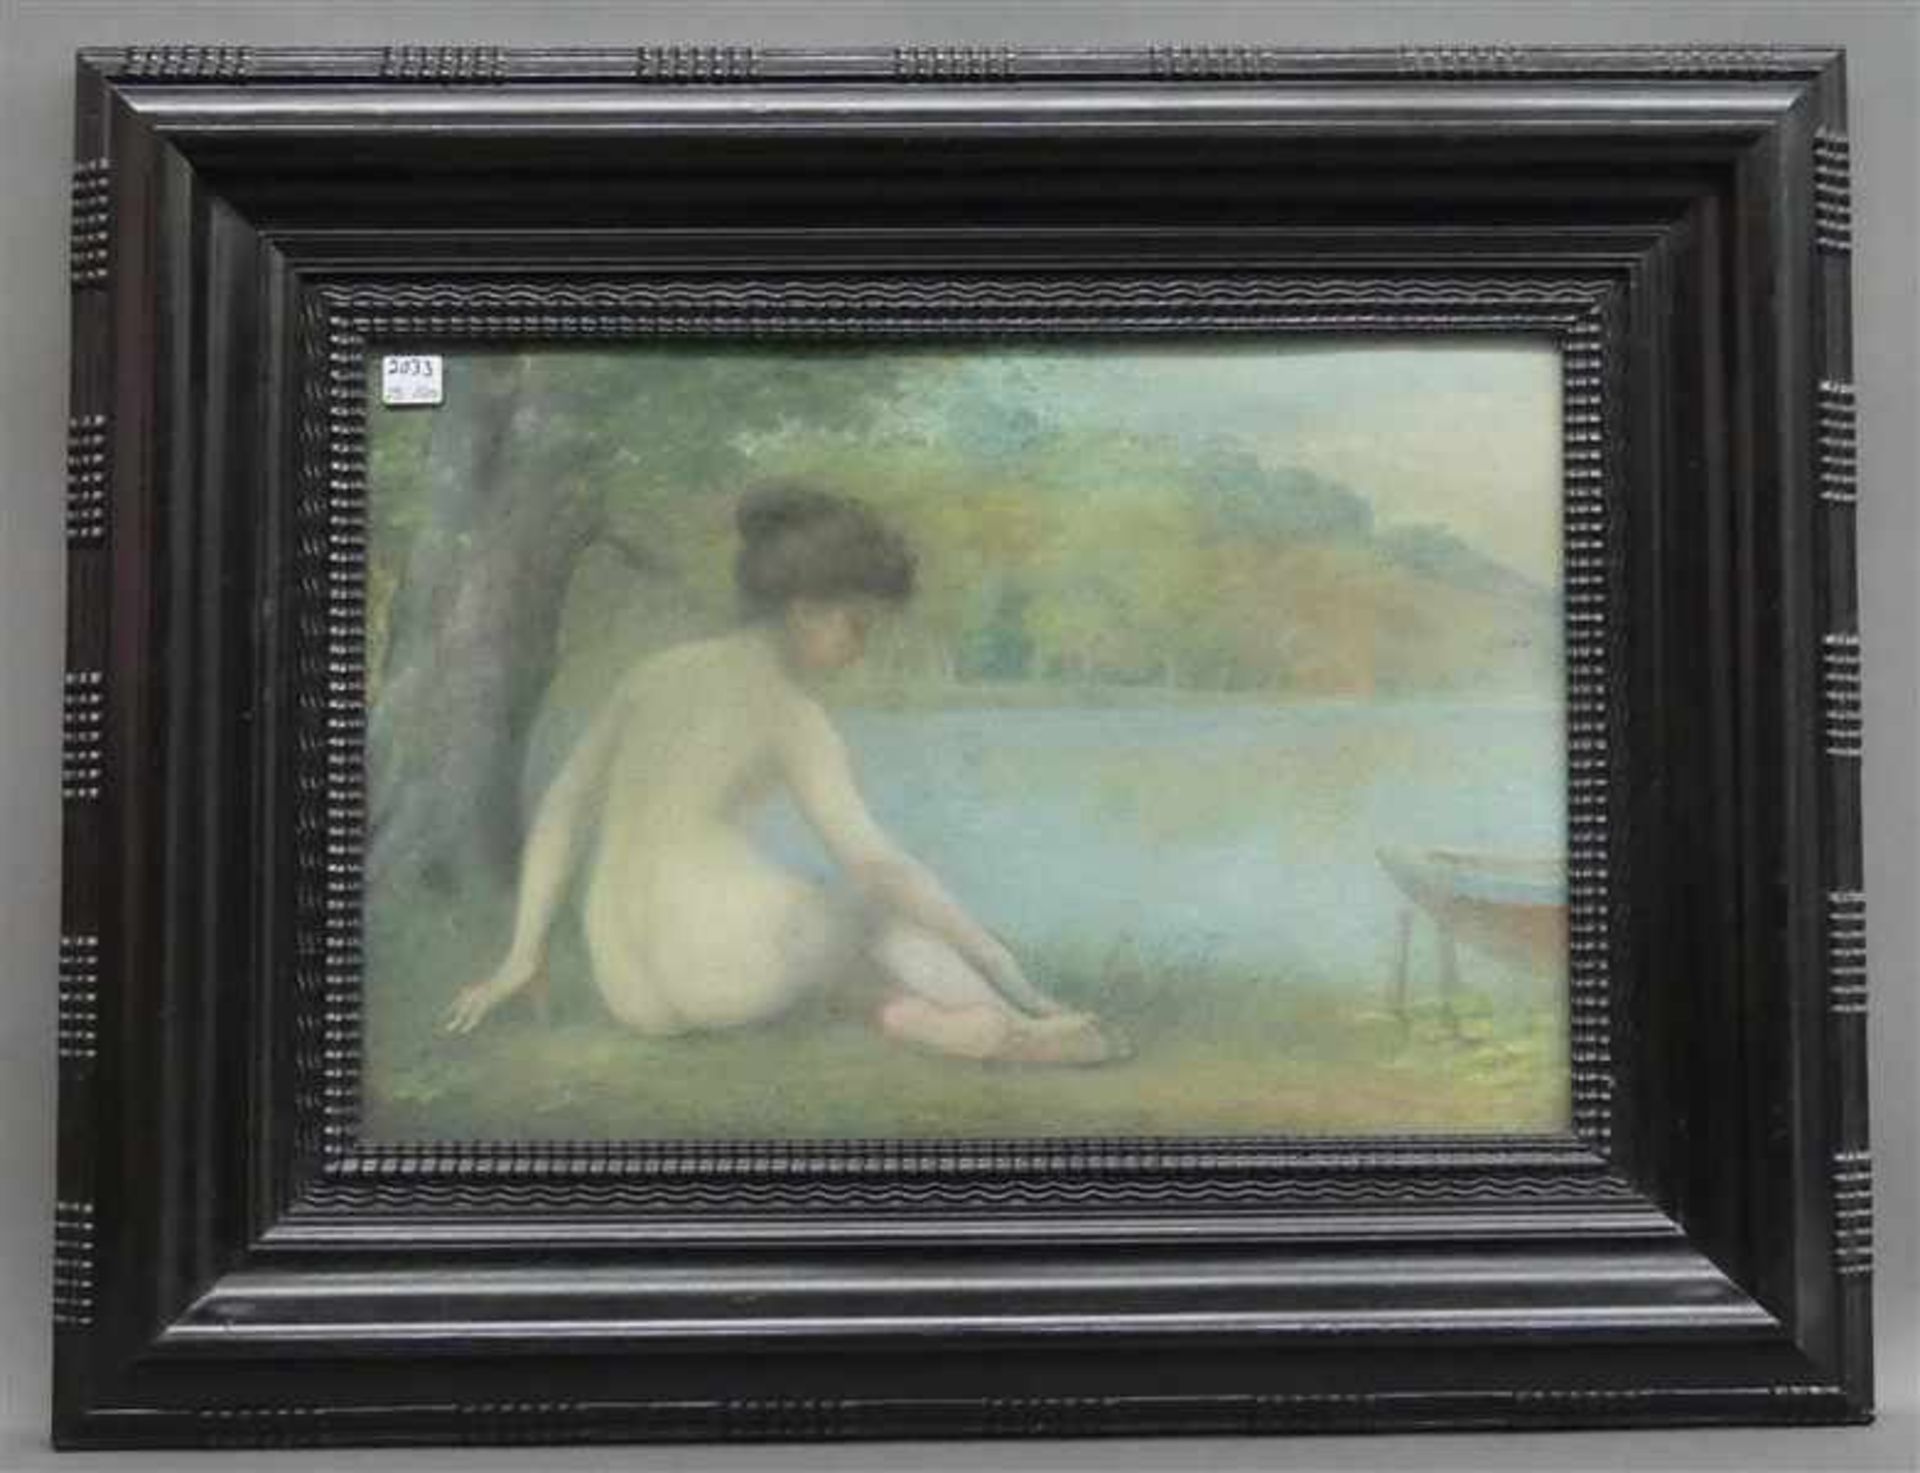 Menard, Emile Rene, zugeschrieben 1861 - 1950 Paris, zugeschrieben, Pastellmalerei, Liegende Nackte - Image 2 of 4